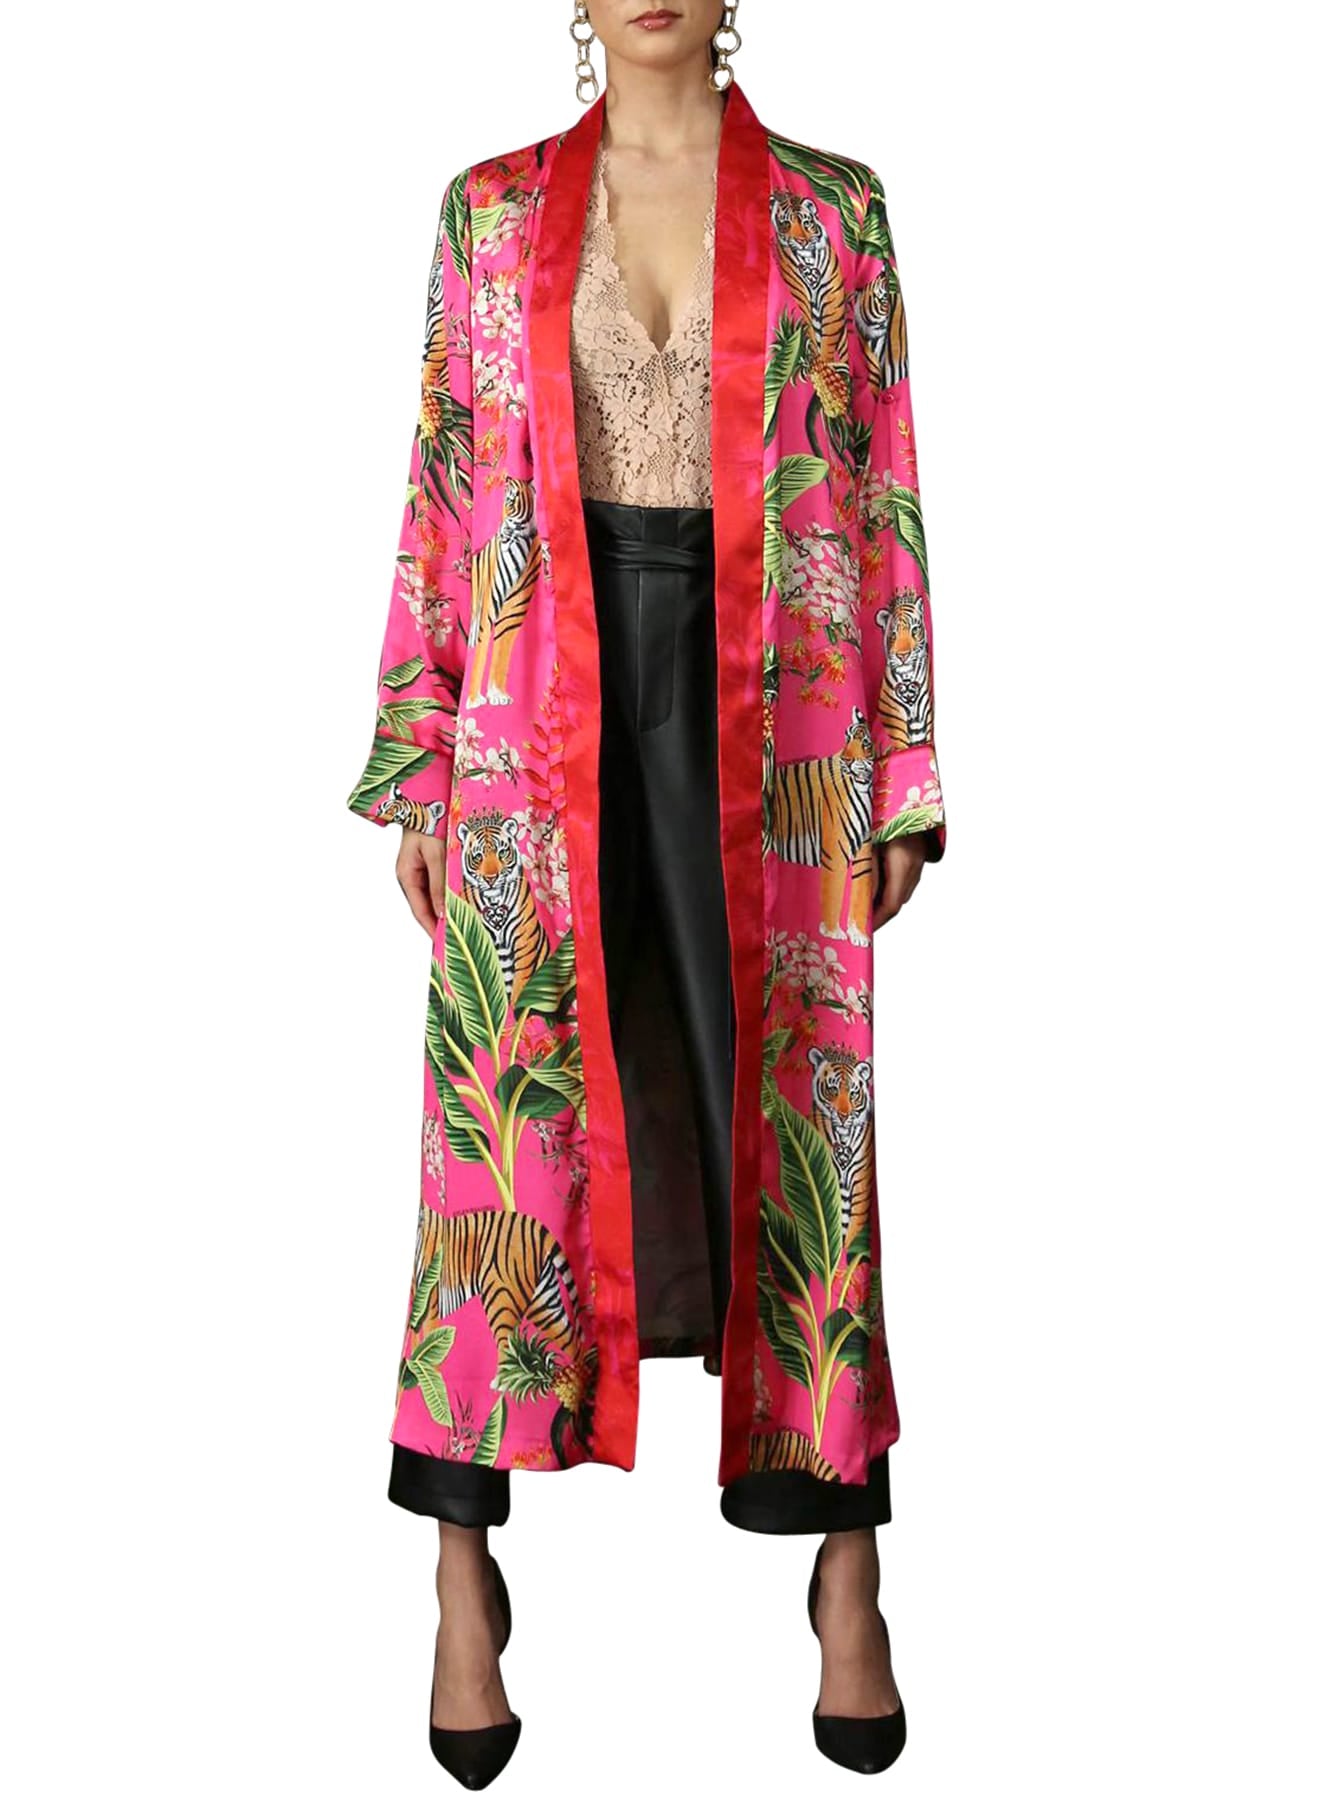 "Kyle X Shahida" "kimono print" "washable silk robe" "woman in silk robe" "silk kimono" "robe dress silk"